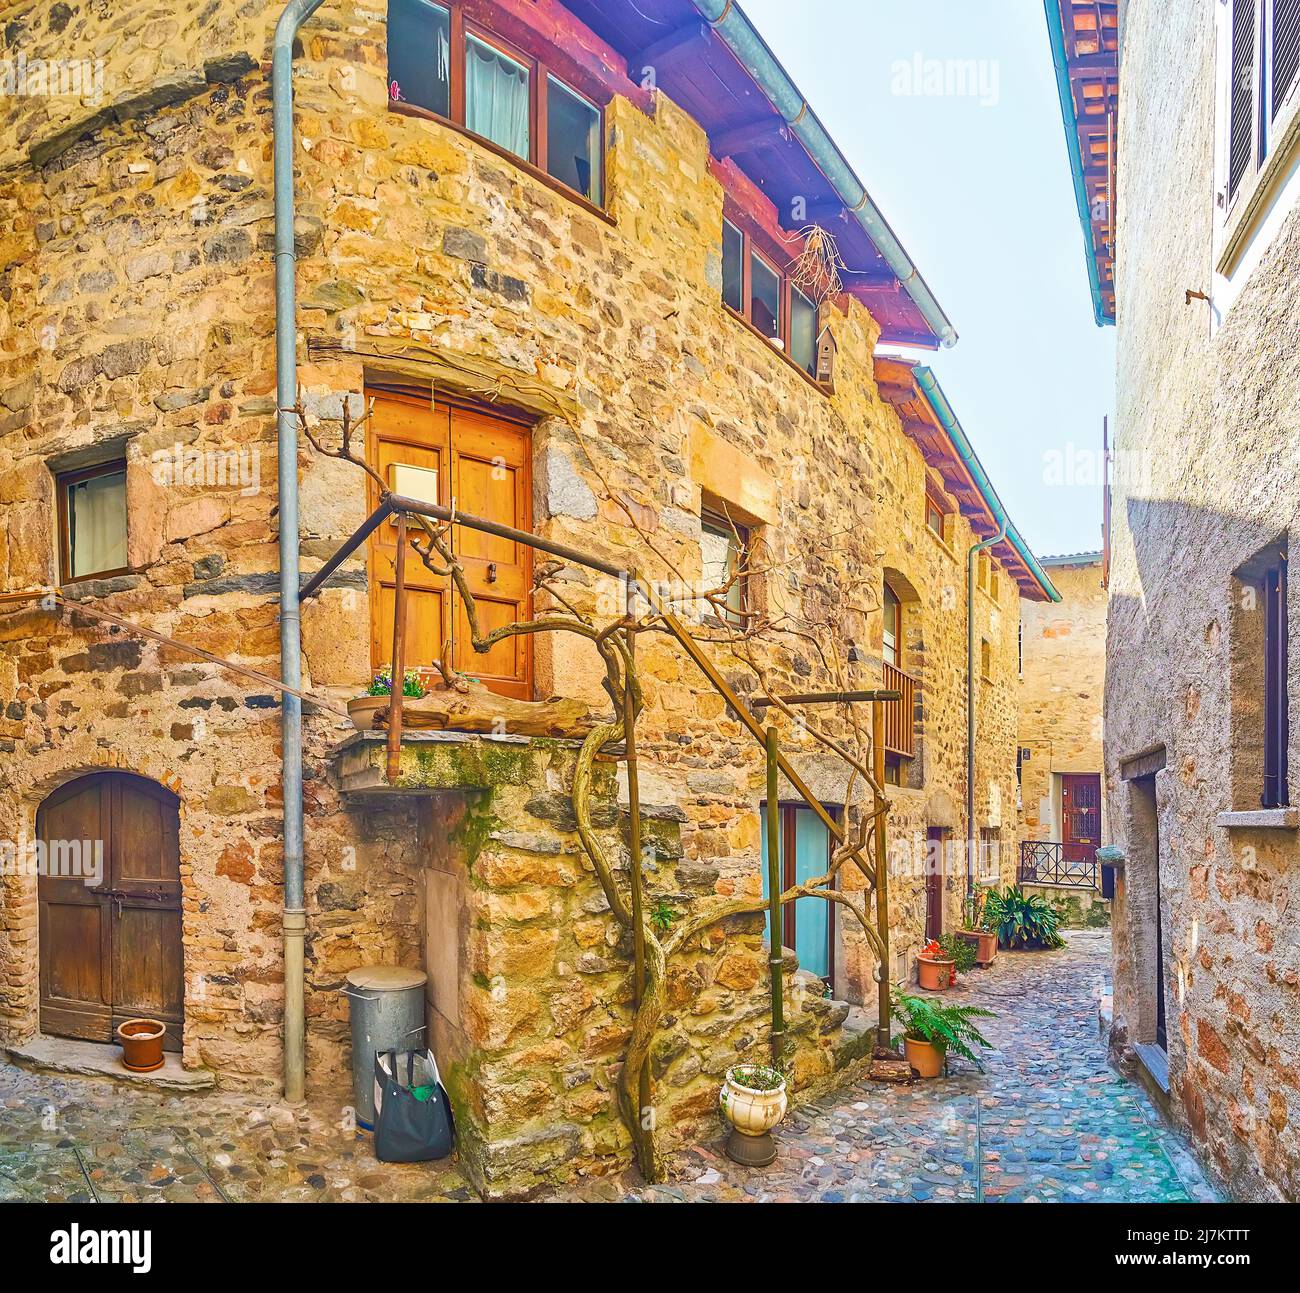 Esplora il labirinto di strade medievali con vecchie case in pietra nel villaggio collinare di Morcote, Svizzera Foto Stock